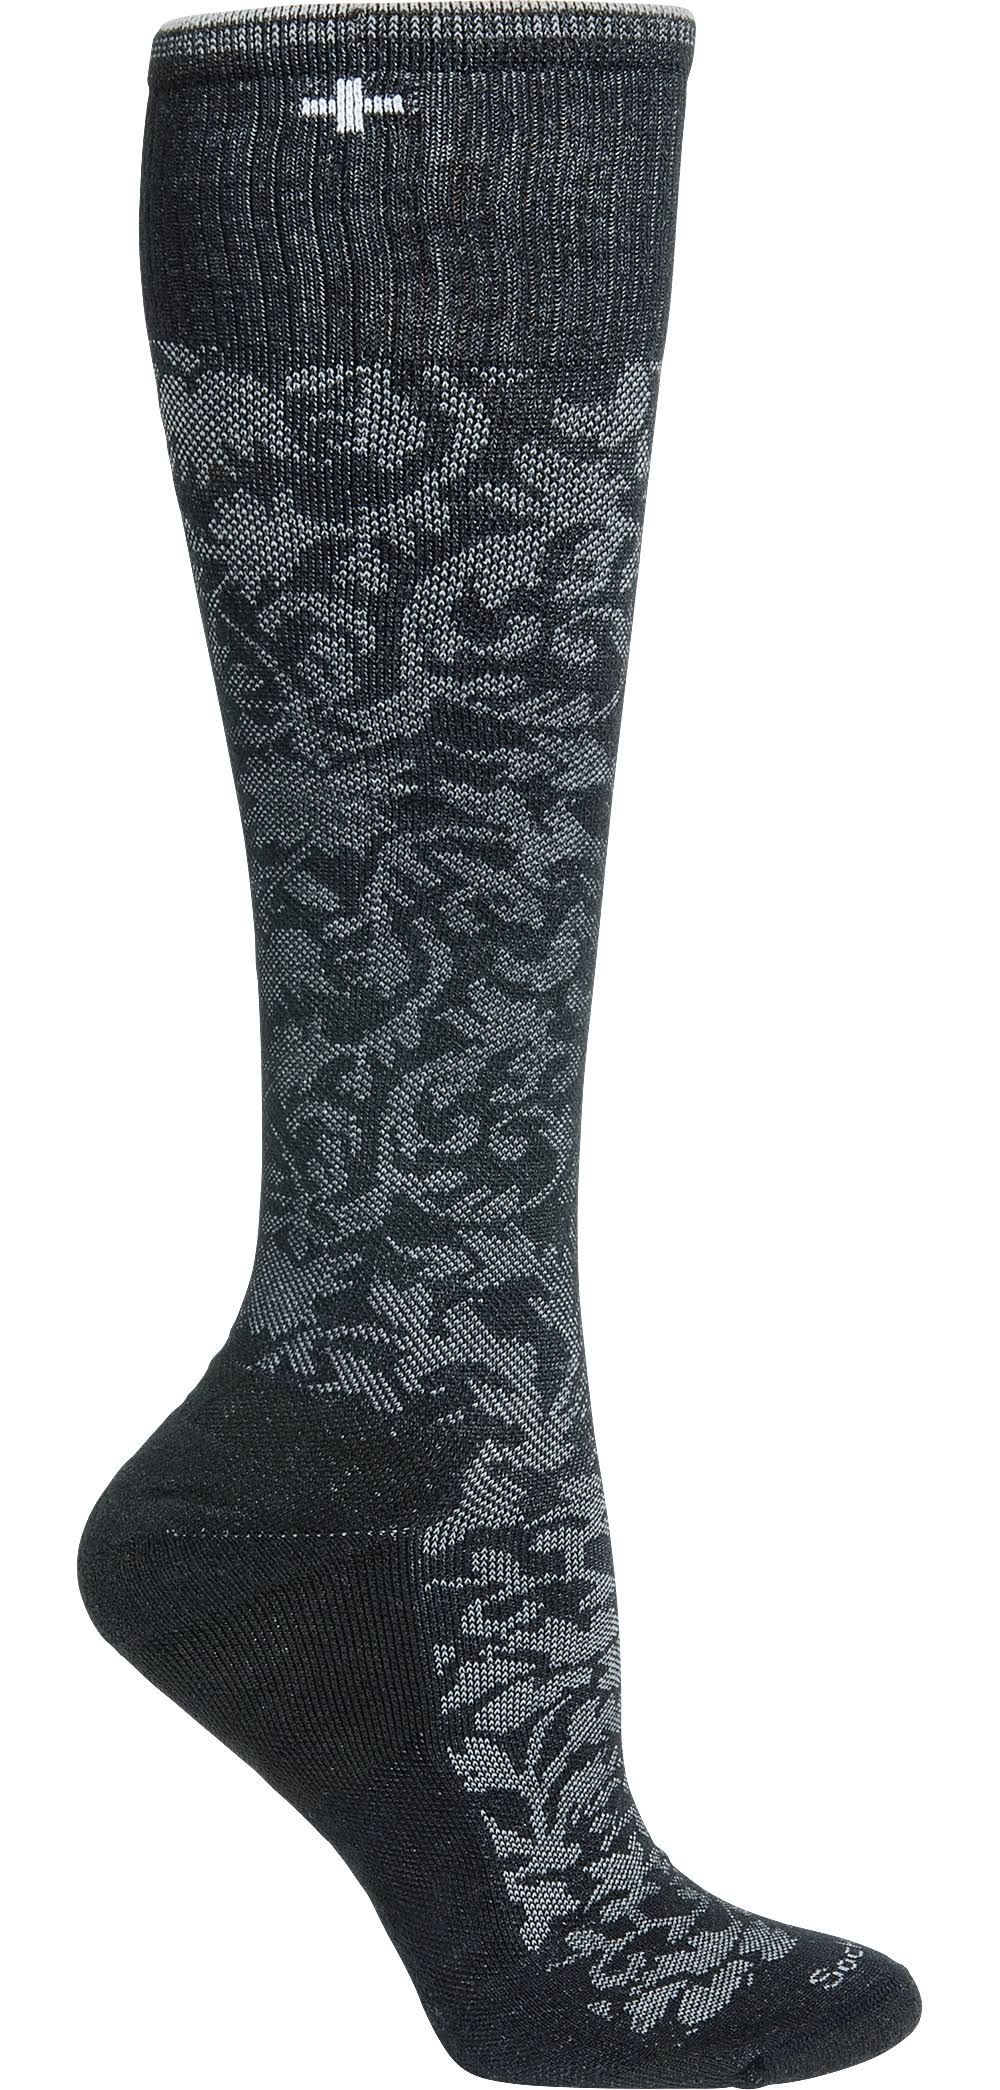 Sockwell Damask Knee High Multi Women's Socks - Black